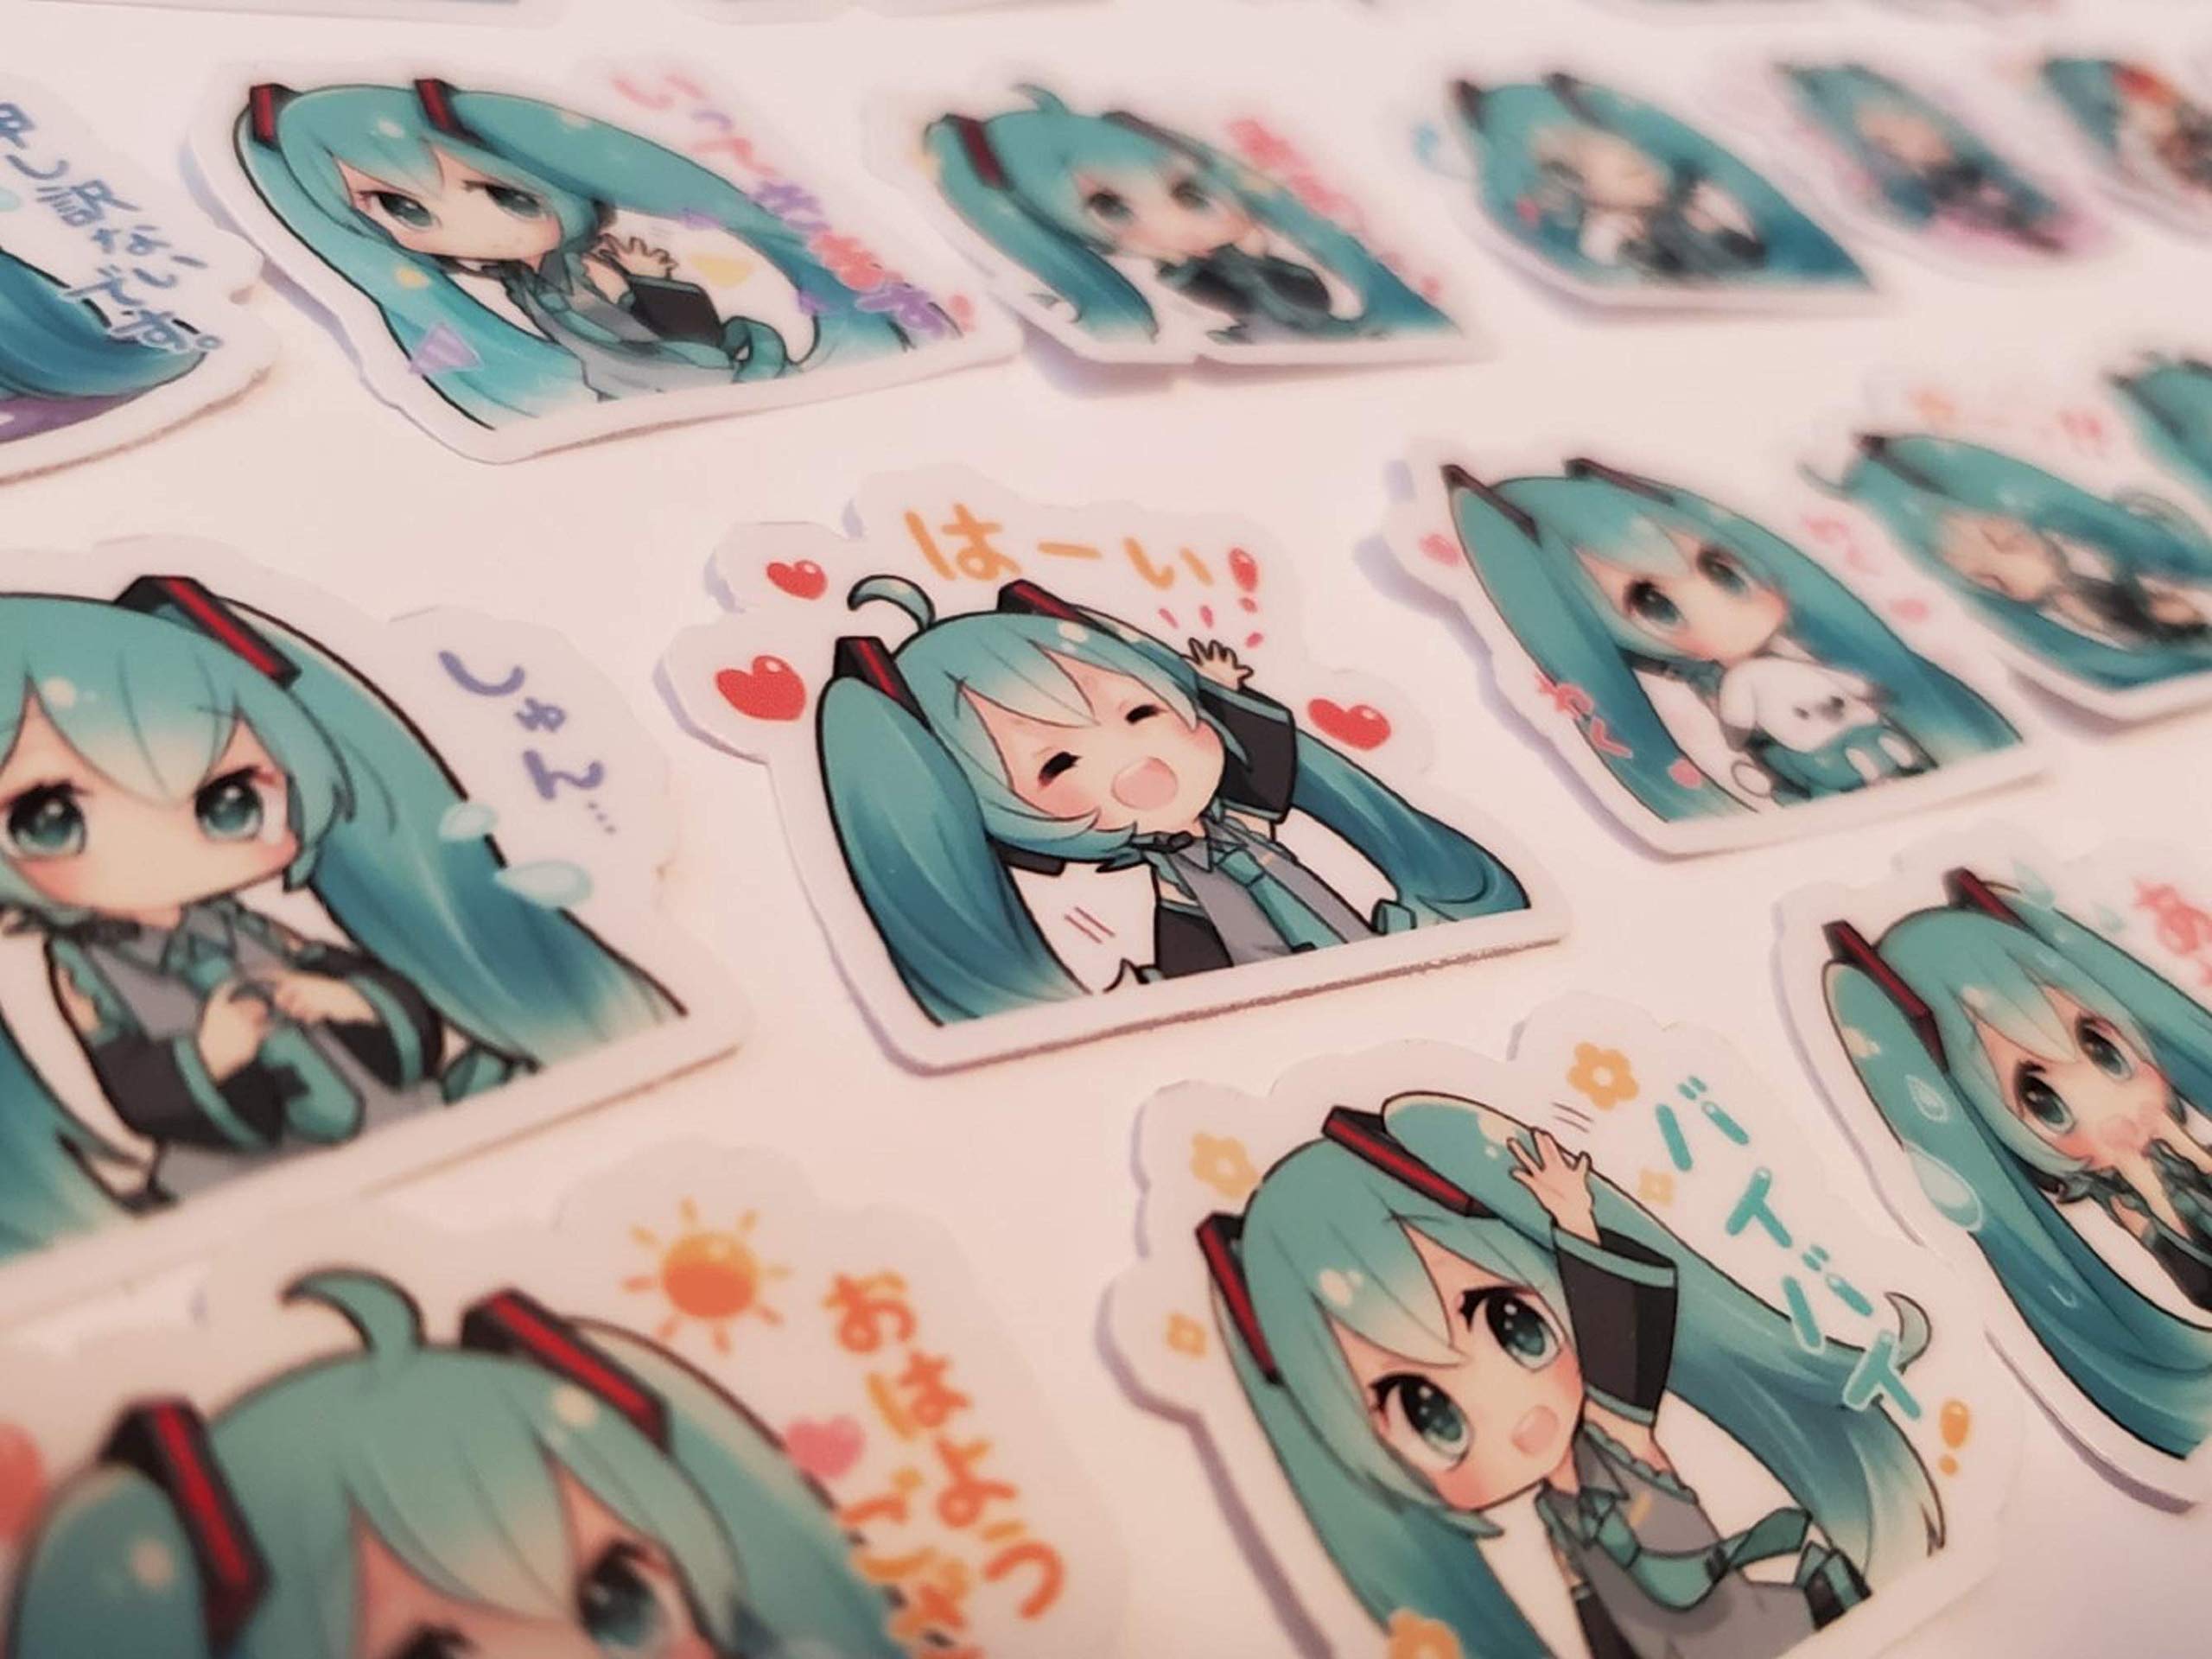 TokiShips Chibi Miku Hatsune stickers - đây là một bộ sưu tập các tem nhỏ chứa đựng hình ảnh cuộn hút của Miku Hatsune. Từ các biểu tượng cảm xúc đến những cảnh quan anime phức tạp - bạn sẽ tìm thấy mọi thứ trong bộ sưu tập này. Sắm ngay TokiShips Chibi Miku Hatsune stickers để tăng thêm phần sáng tạo cho cuộc sống hàng ngày của bạn.